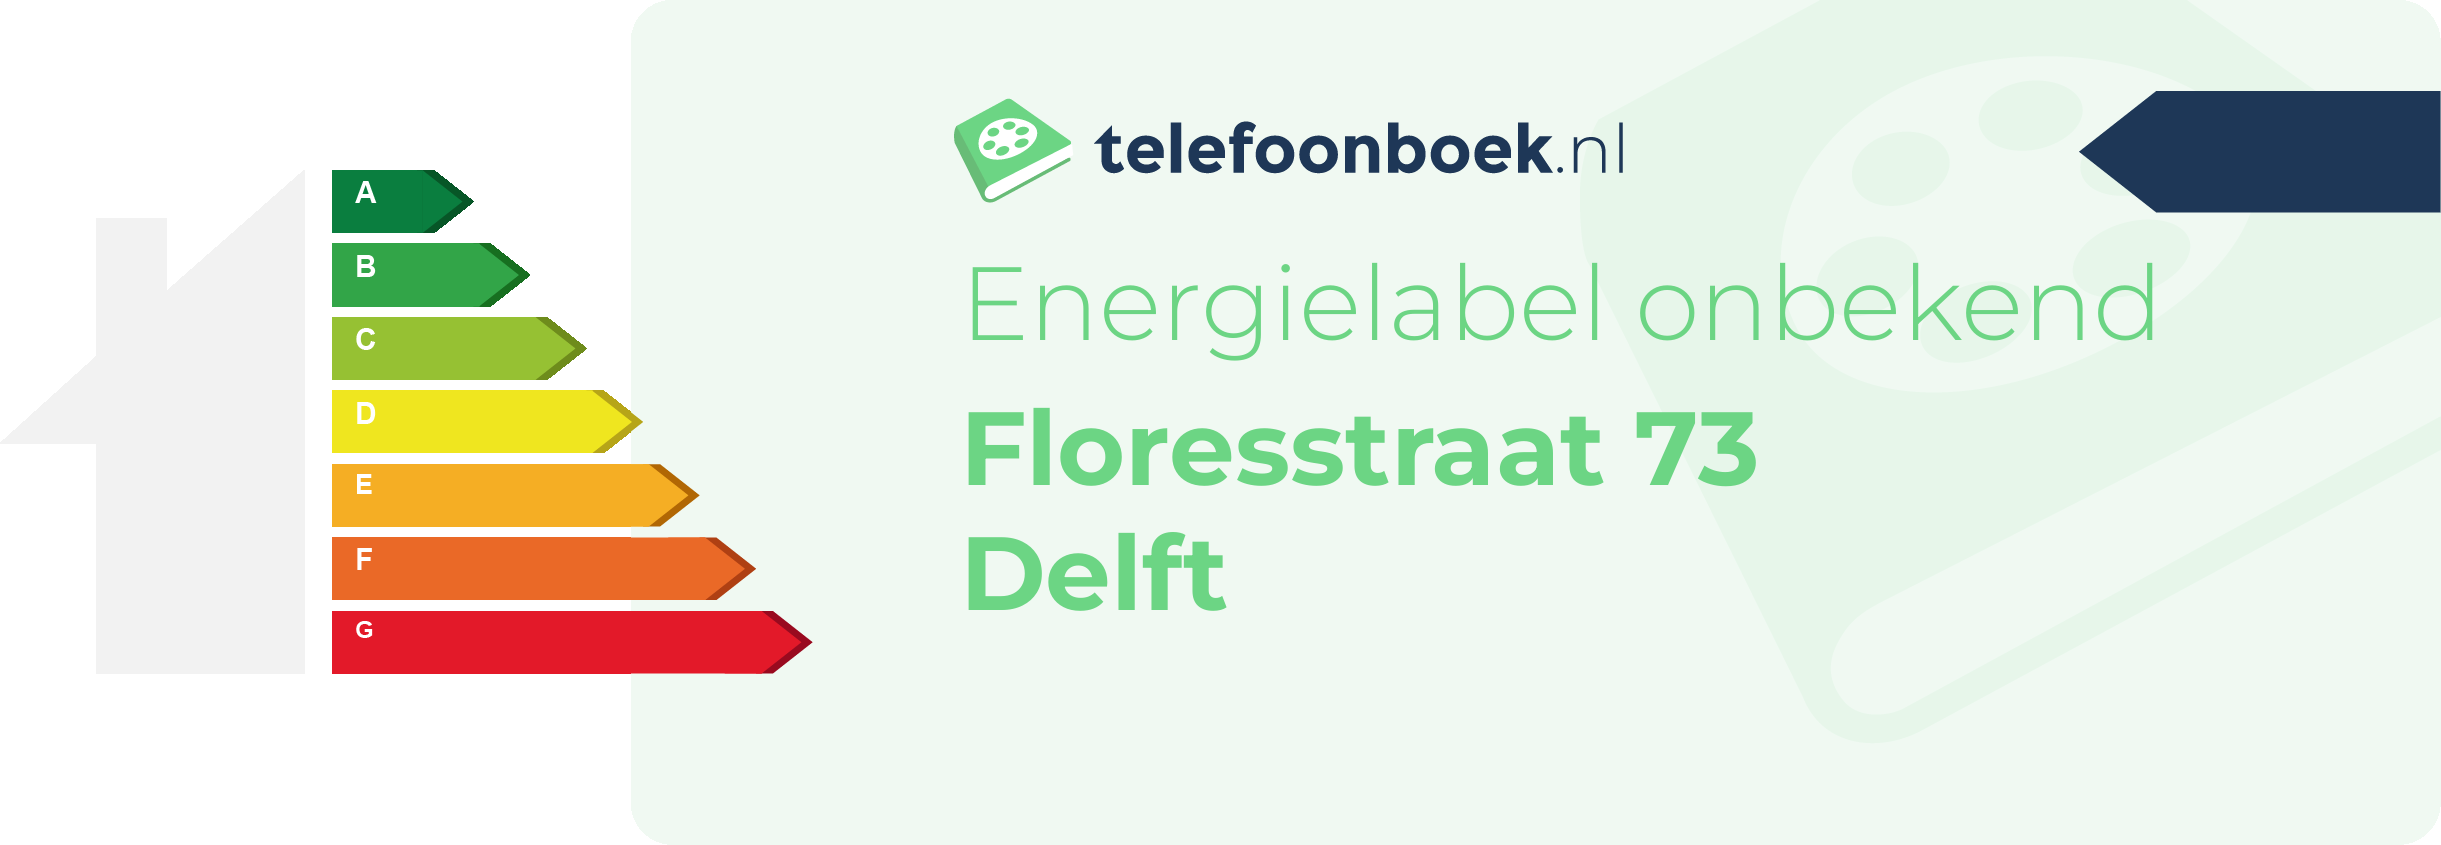 Energielabel Floresstraat 73 Delft